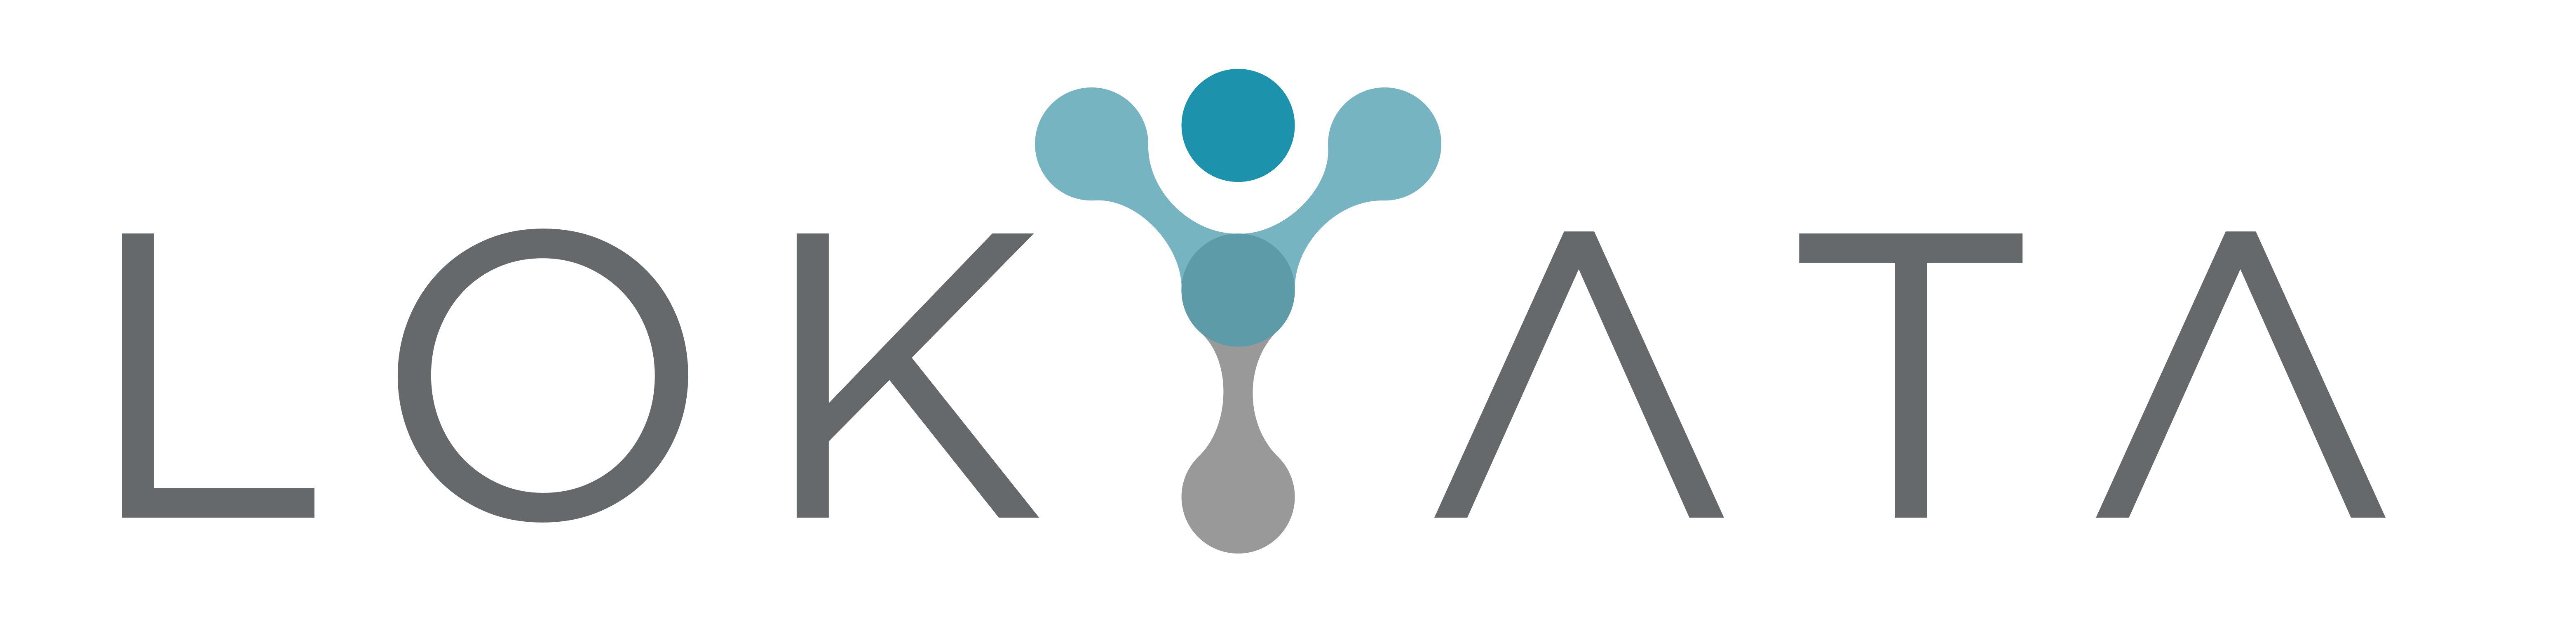 lokyata_logo